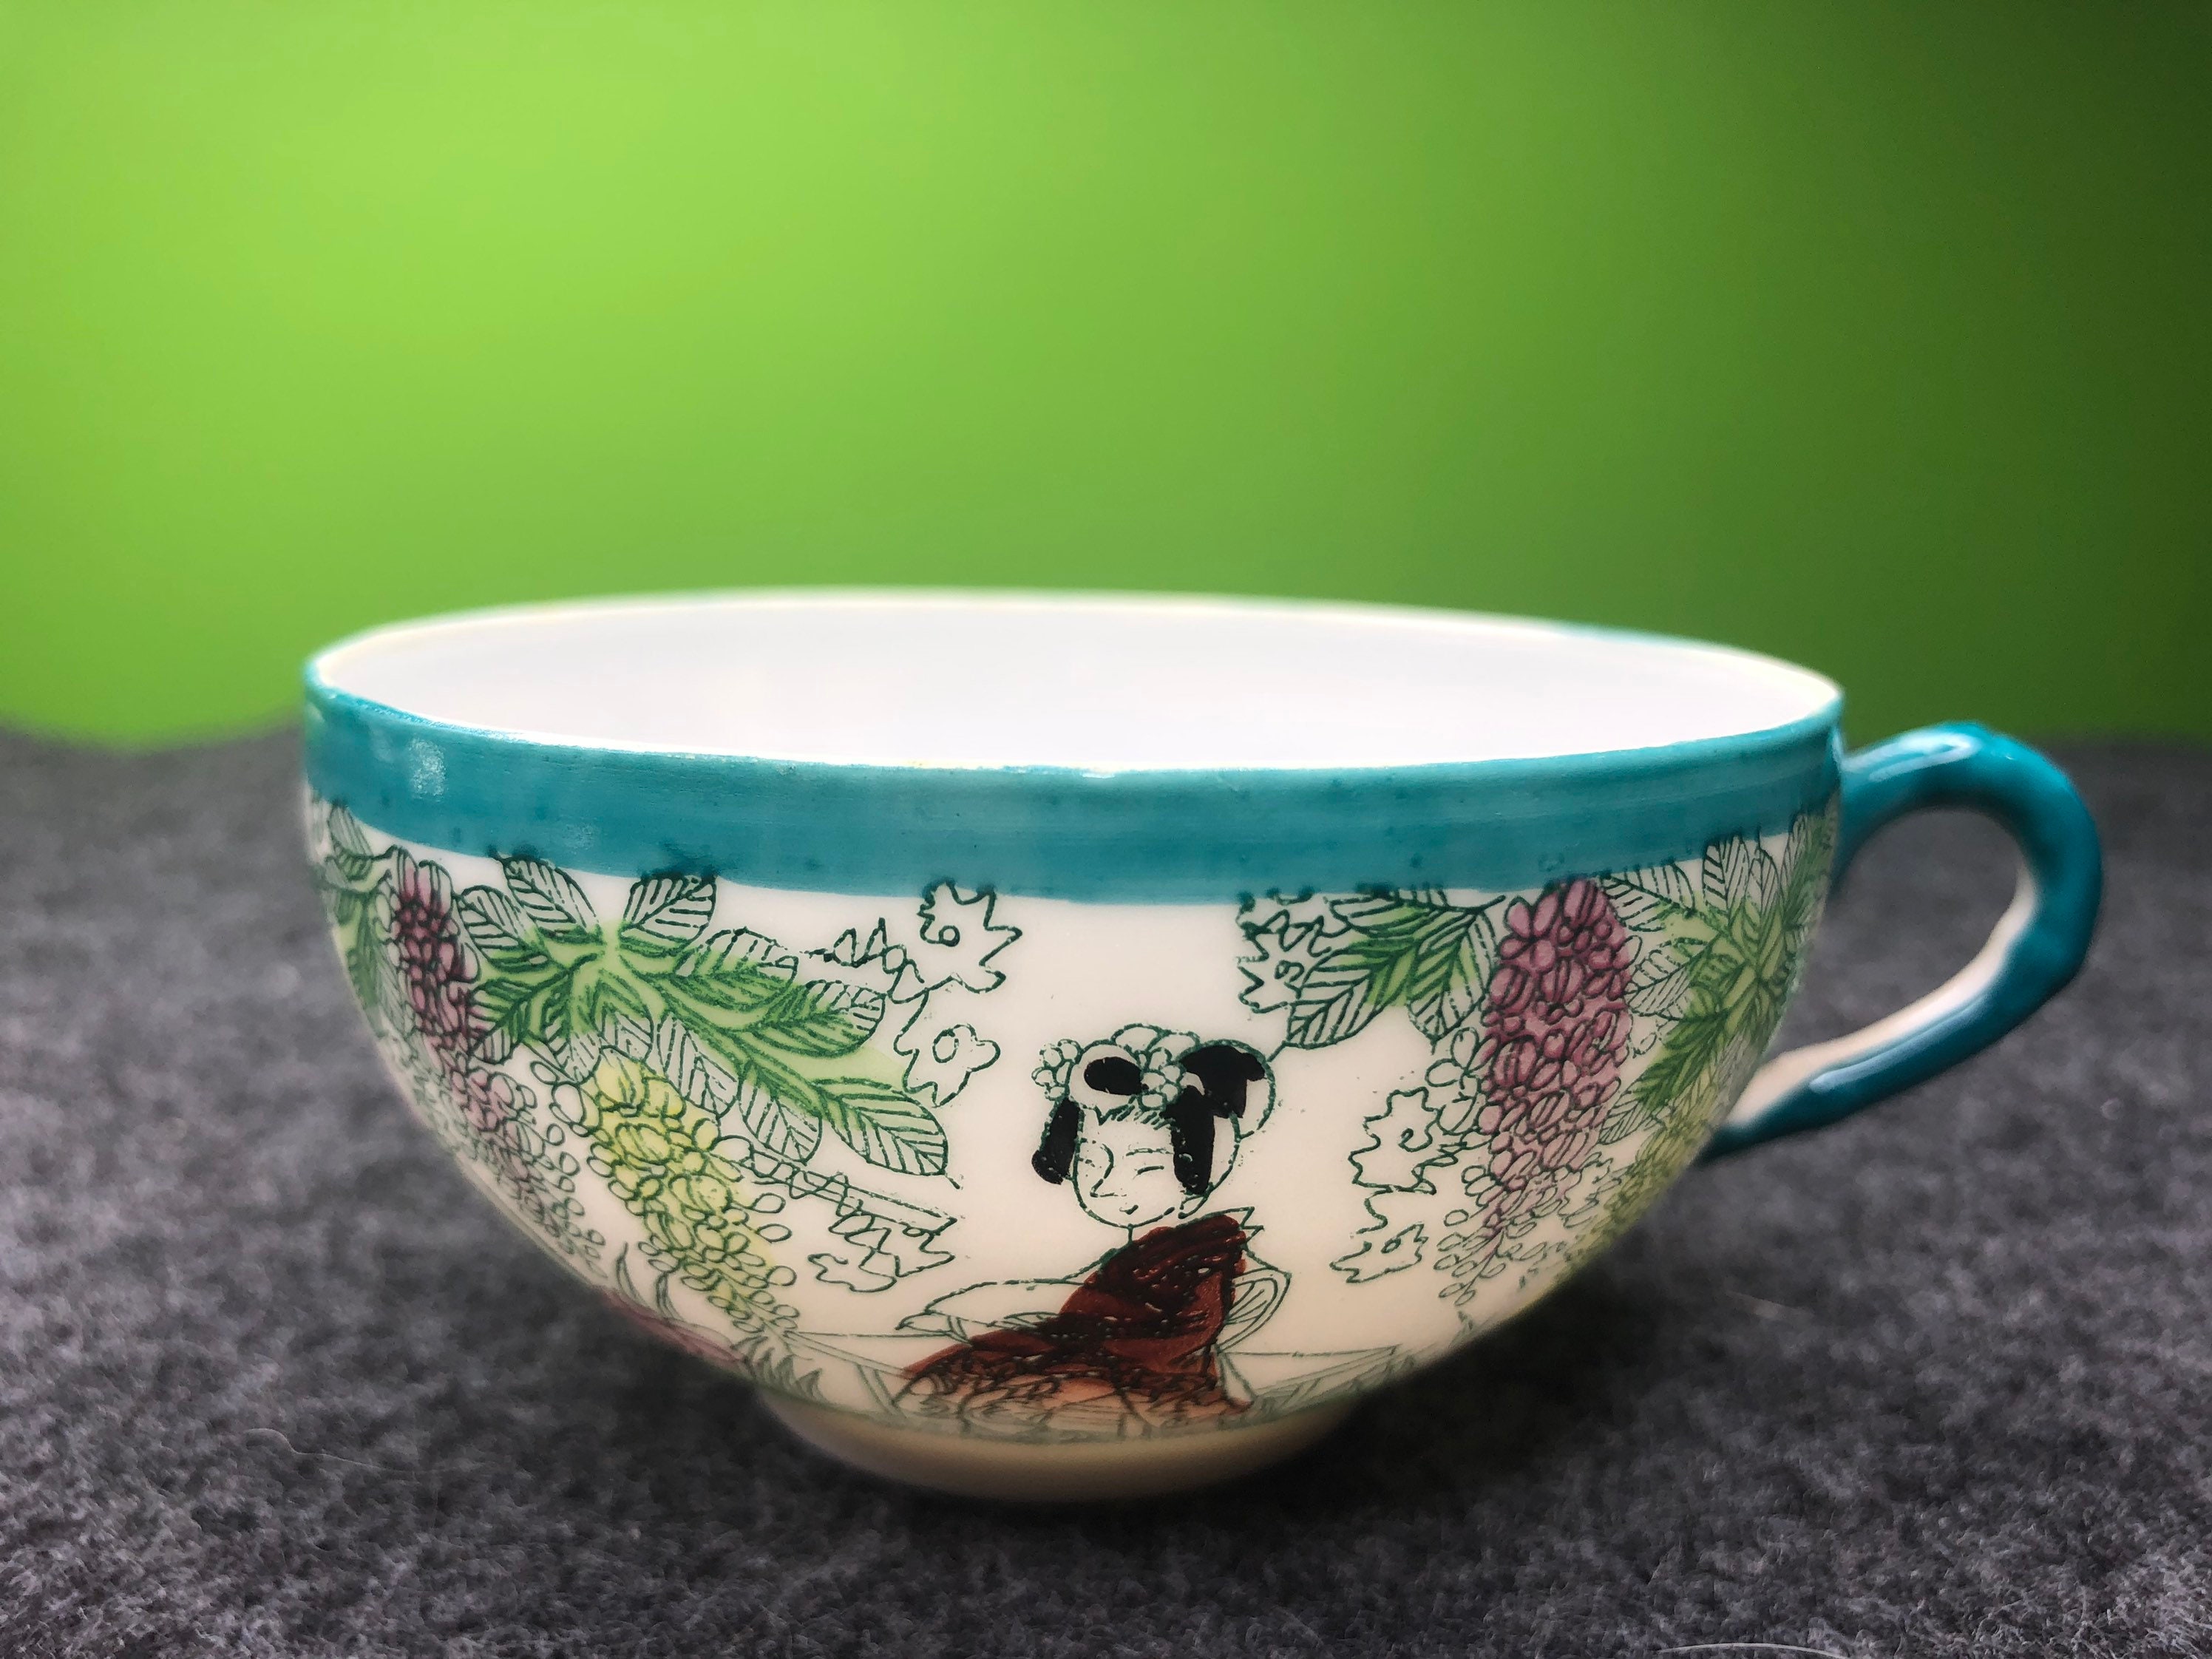 ufengke Pote de café de cerámica blanco de 51 oz, con volantes con tetera  de porcelana lateral dorada, calabaza de gran capacidad acanaló la taza de